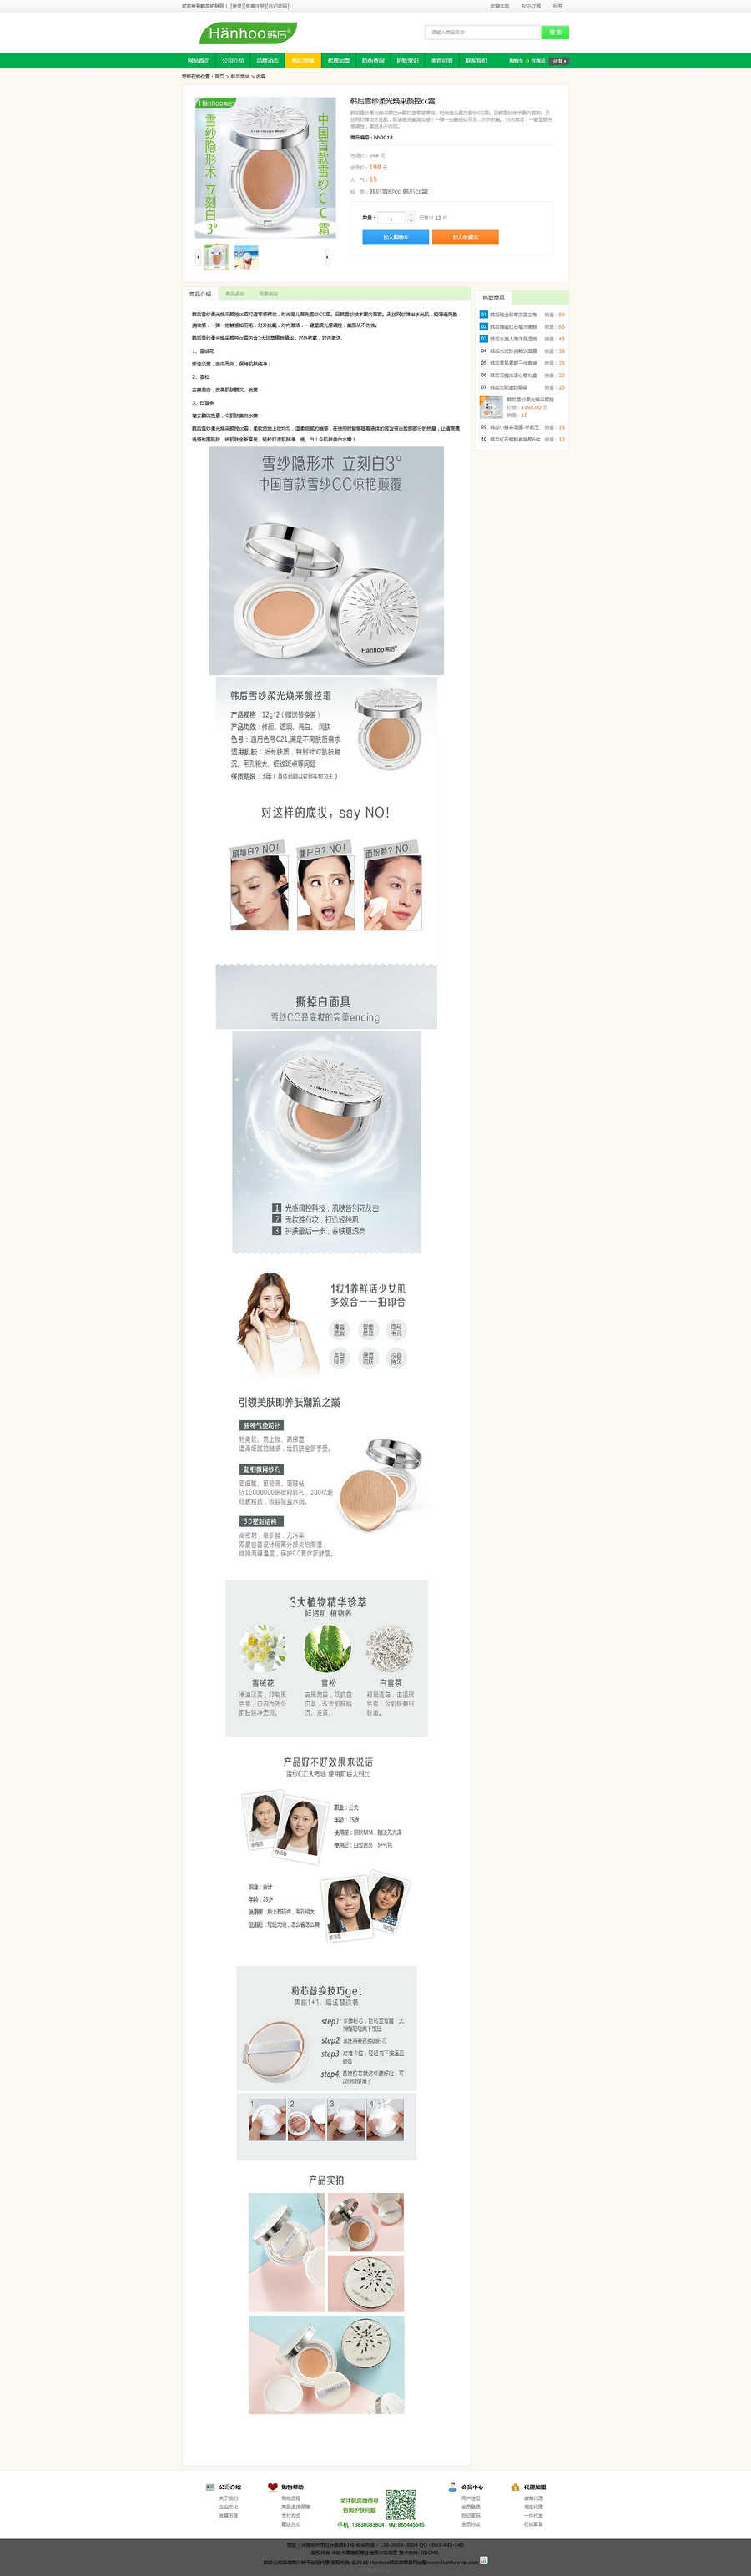 韩后化妆品价格表|hanhoo官方总代理|韩后微商官网_韩后化妆品网站源码